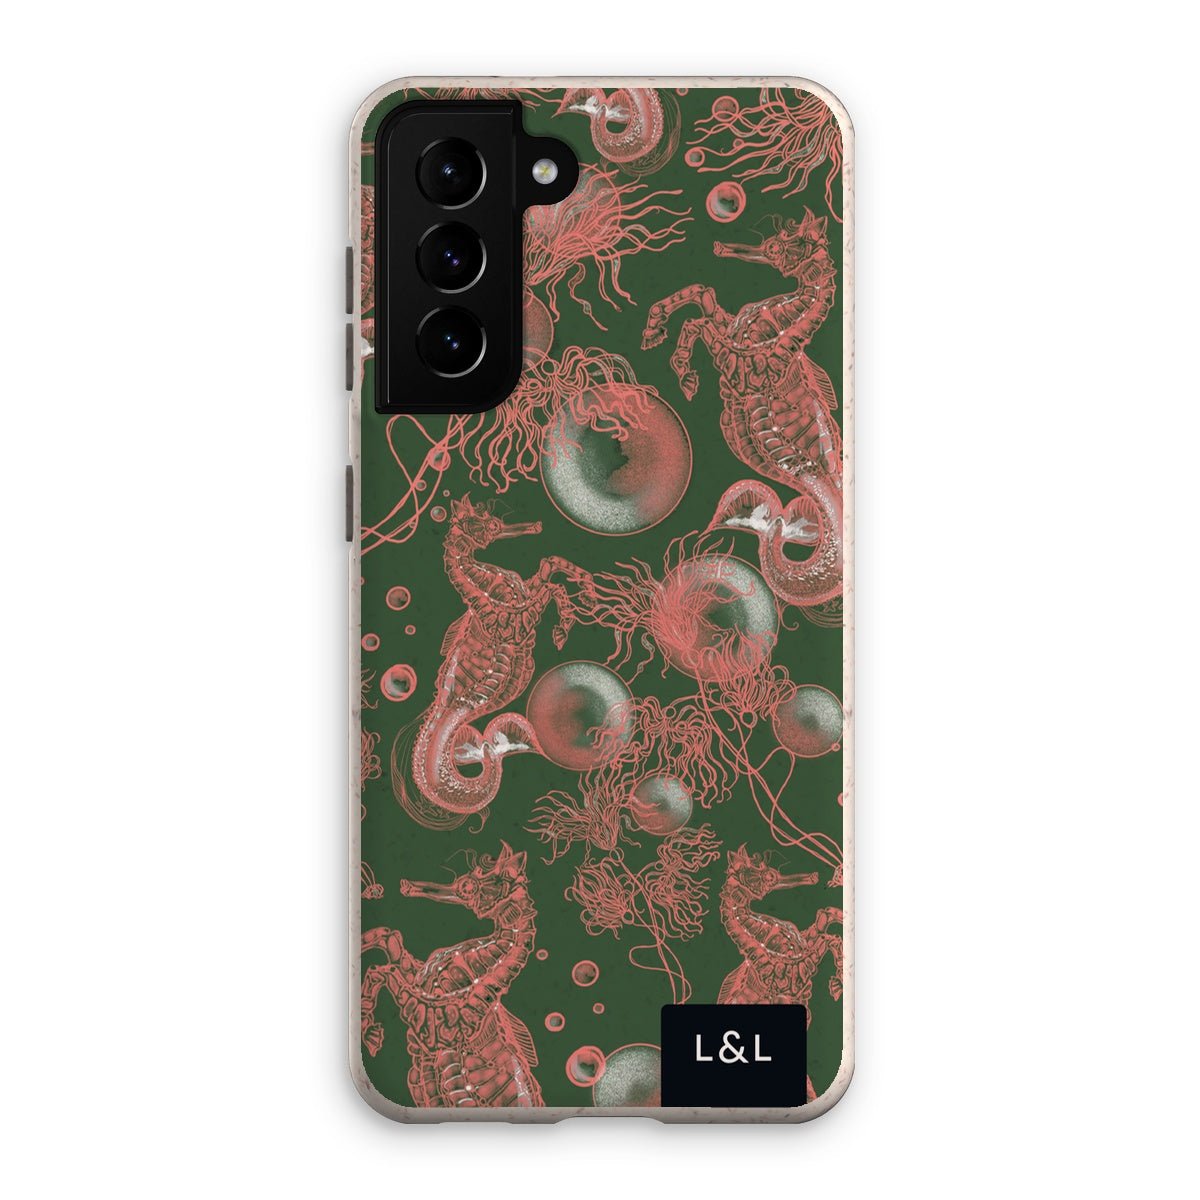 Sea Life Eco Phone Case - Loam & Lore